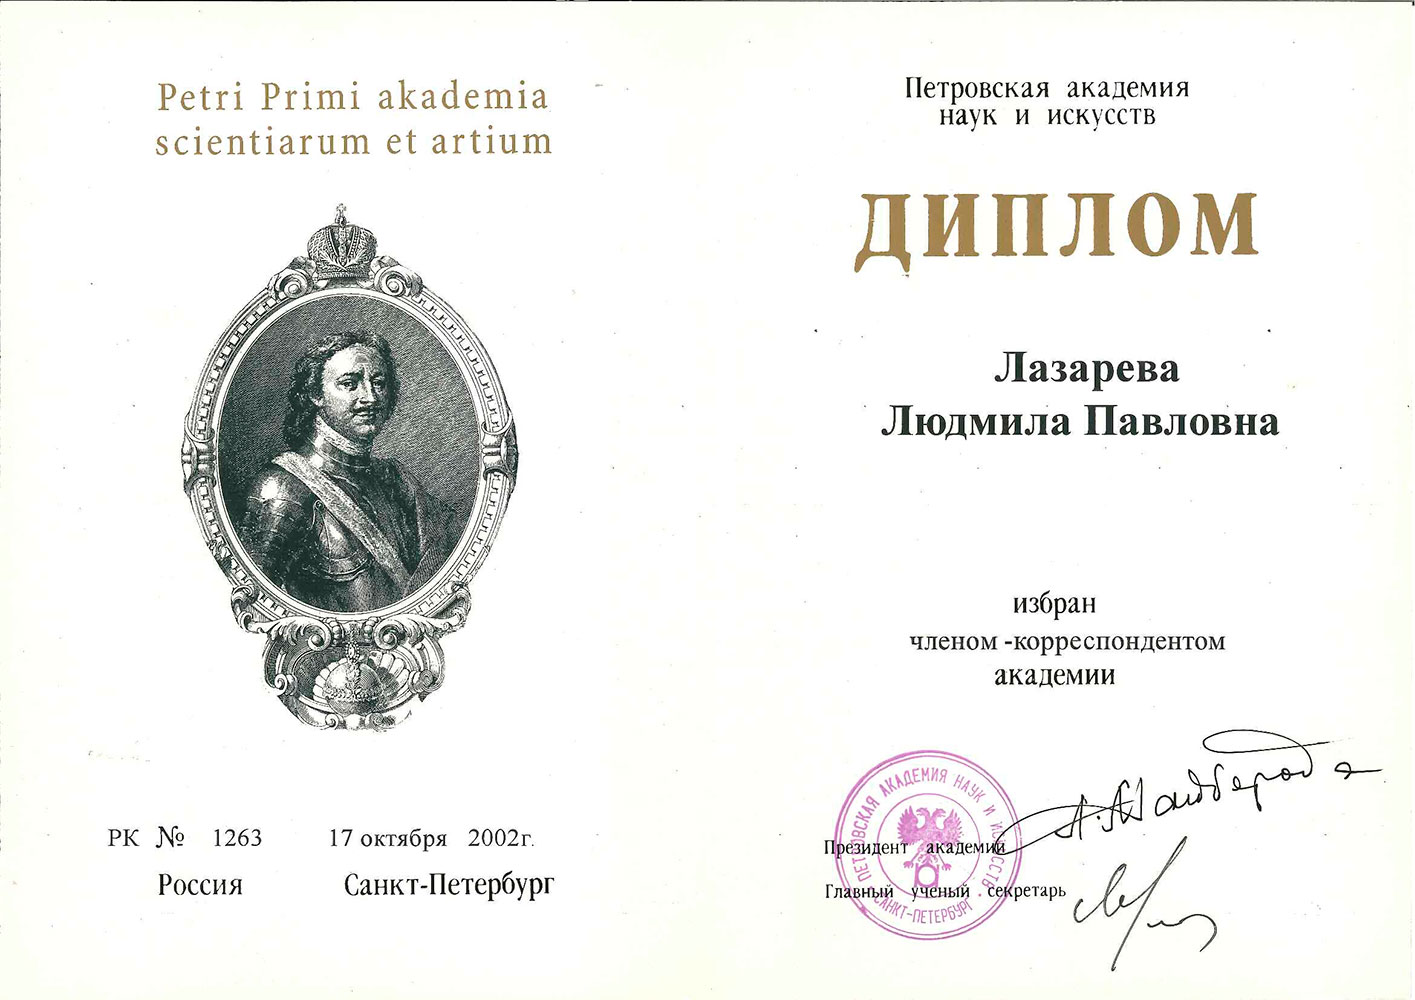 Диплом члена-корреспондента Петровской академии наук и искусств